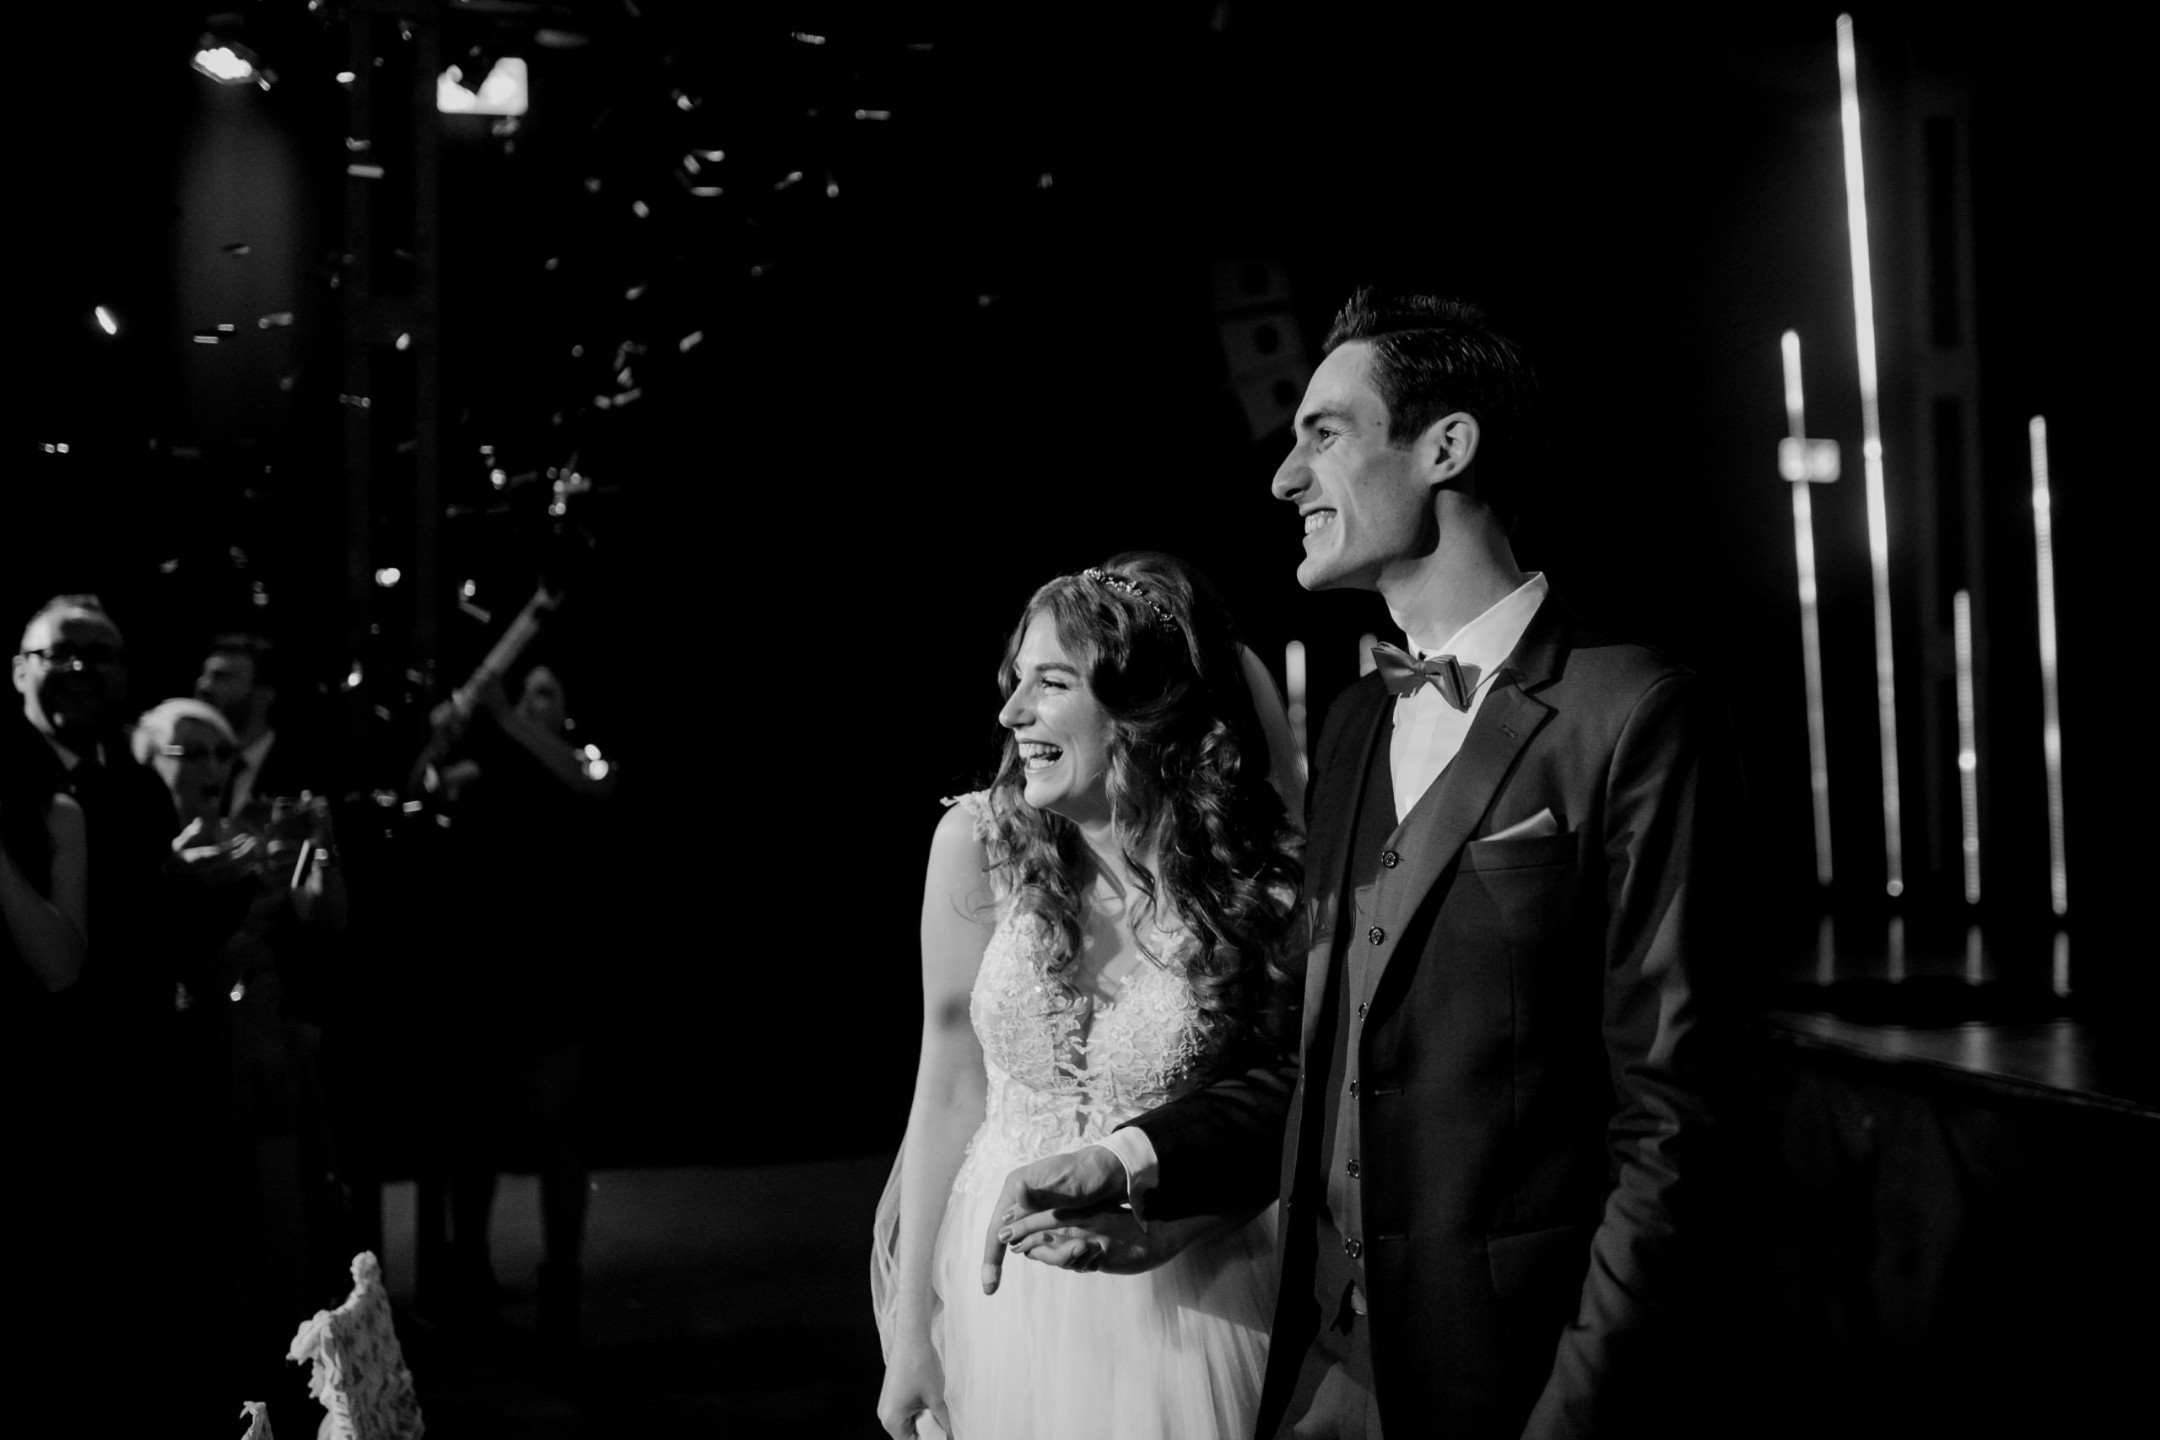 Aida + Tim | Hochzeitsfotografen am Bodensee Hochzeit - Birnauer Oberhof, Bodensee  - Hochzeitsfotografie von Aida und Tim